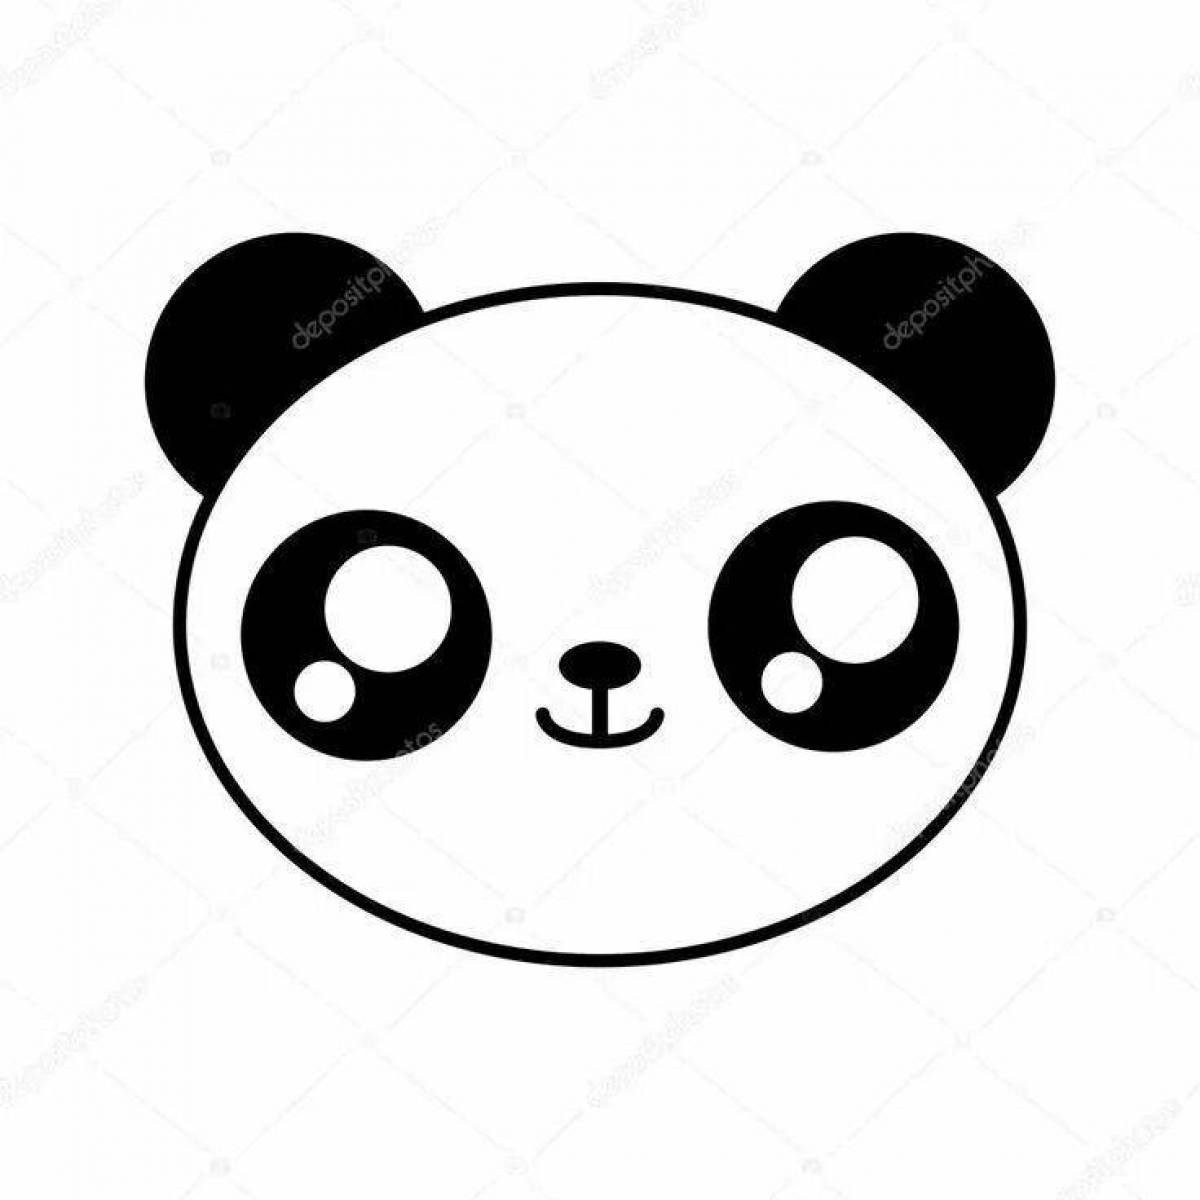 Cute cute panda coloring book